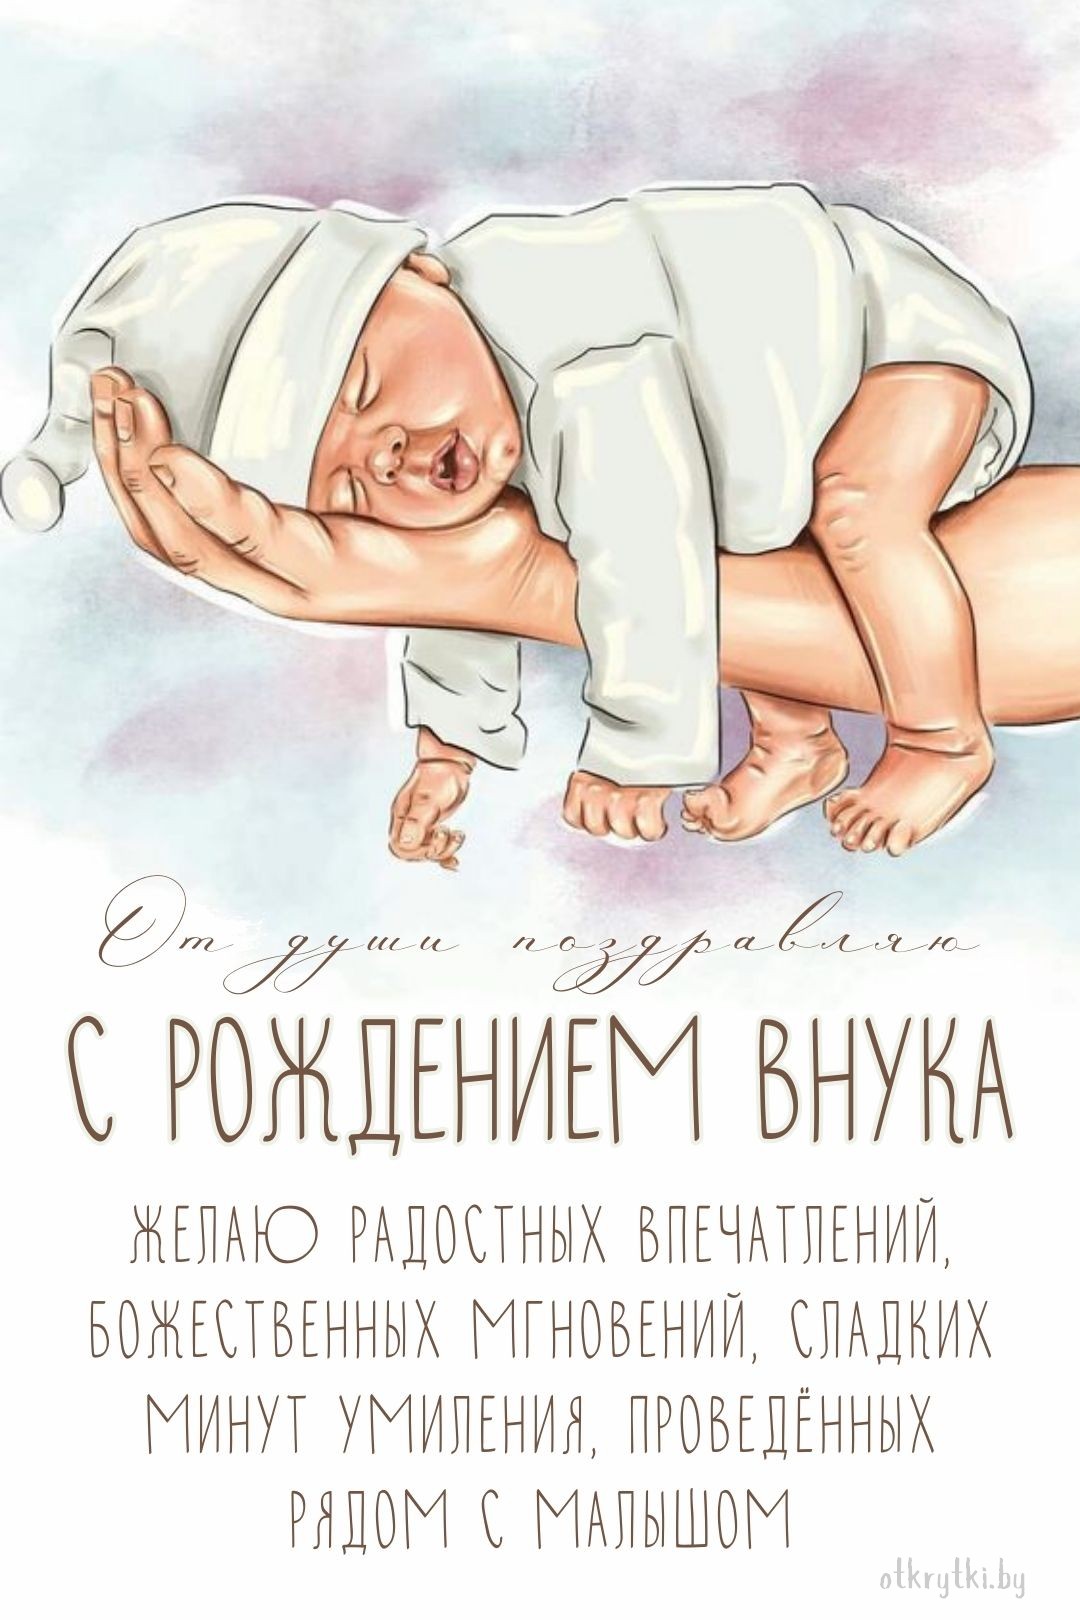 Поздравление с рождением внука в открытке